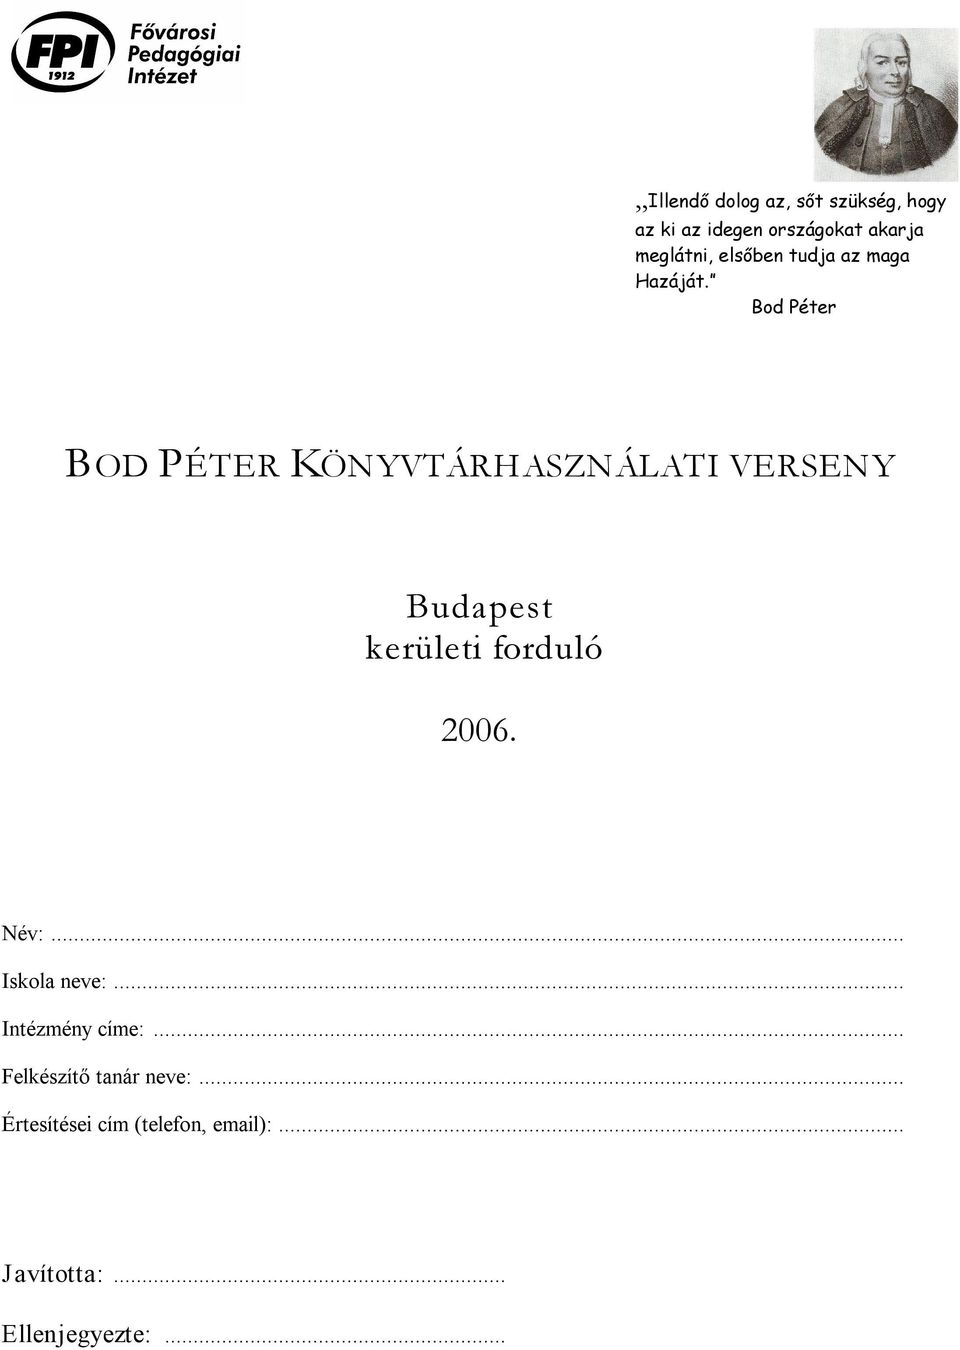 Bod Péter BOD PÉTER KÖNYVTÁRHASZNÁLATI VERSENY Budapest kerületi forduló 2006.